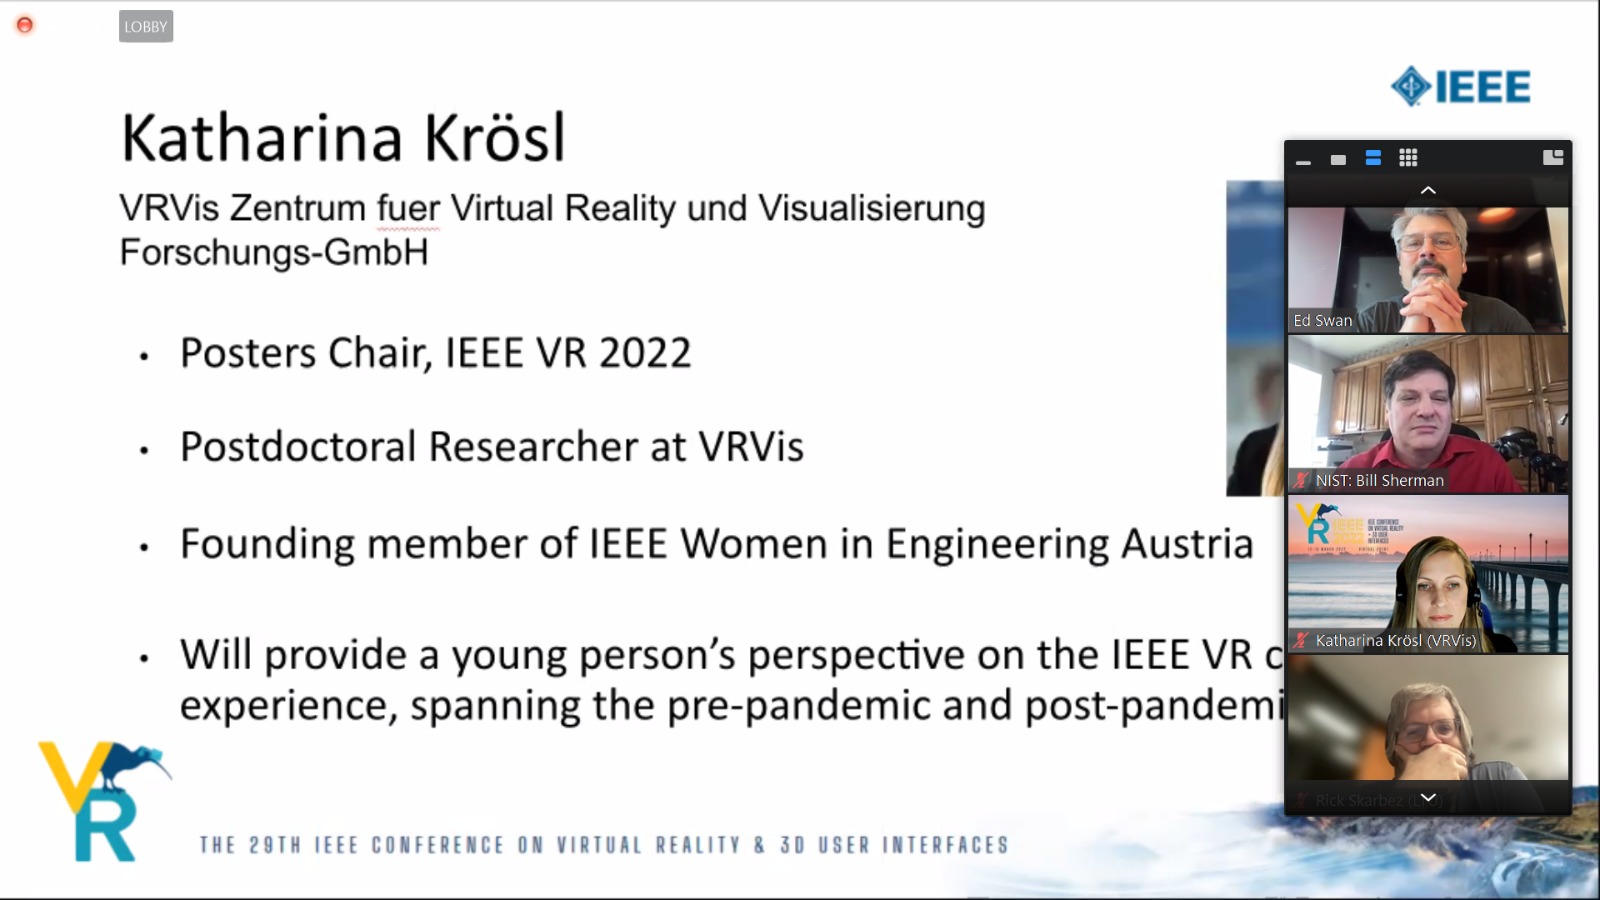 Eine Folie, die Katharina Krösl in ein paar Punkten vorstellt, rechts vier Video-Rechtecke mit Forschern. 